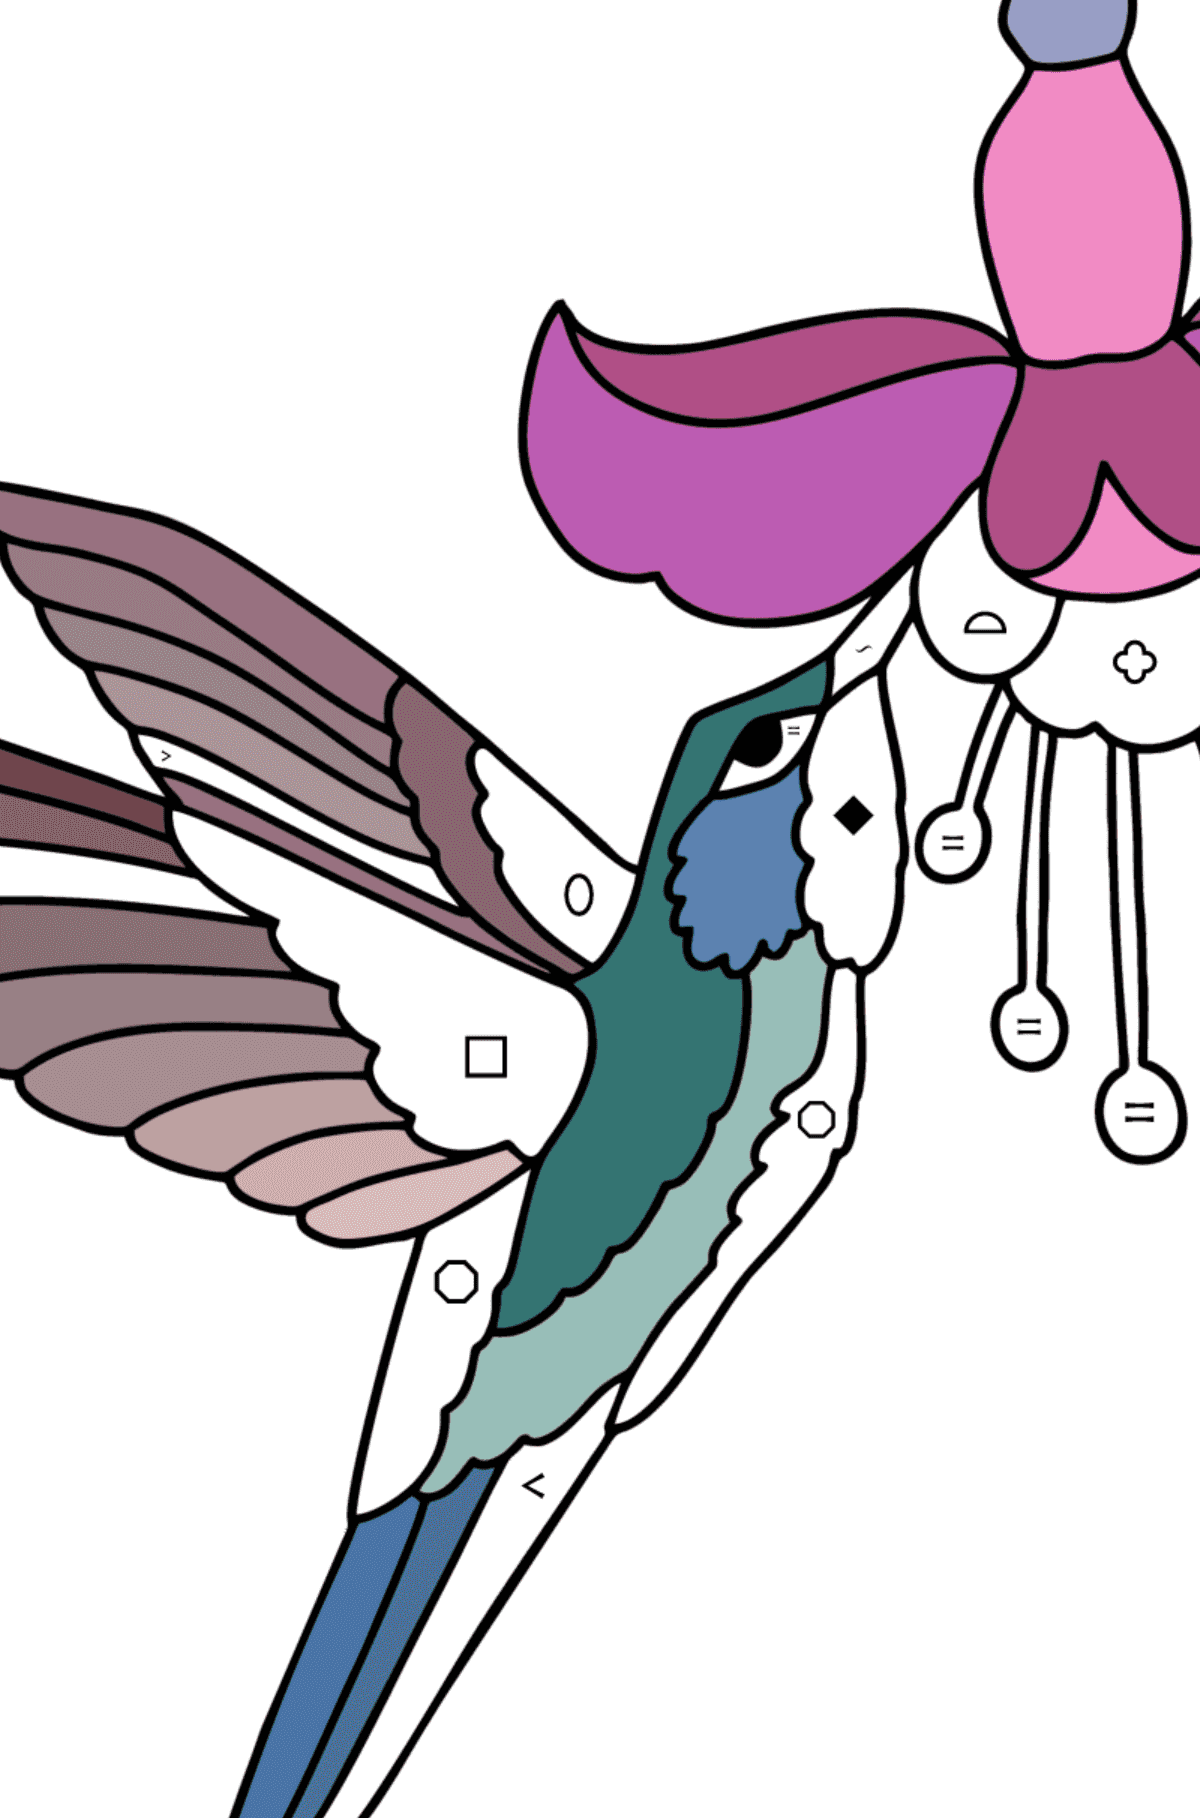 Kolorowanka Koliber dżungla - Kolorowanie według symboli i figur geometrycznych dla dzieci